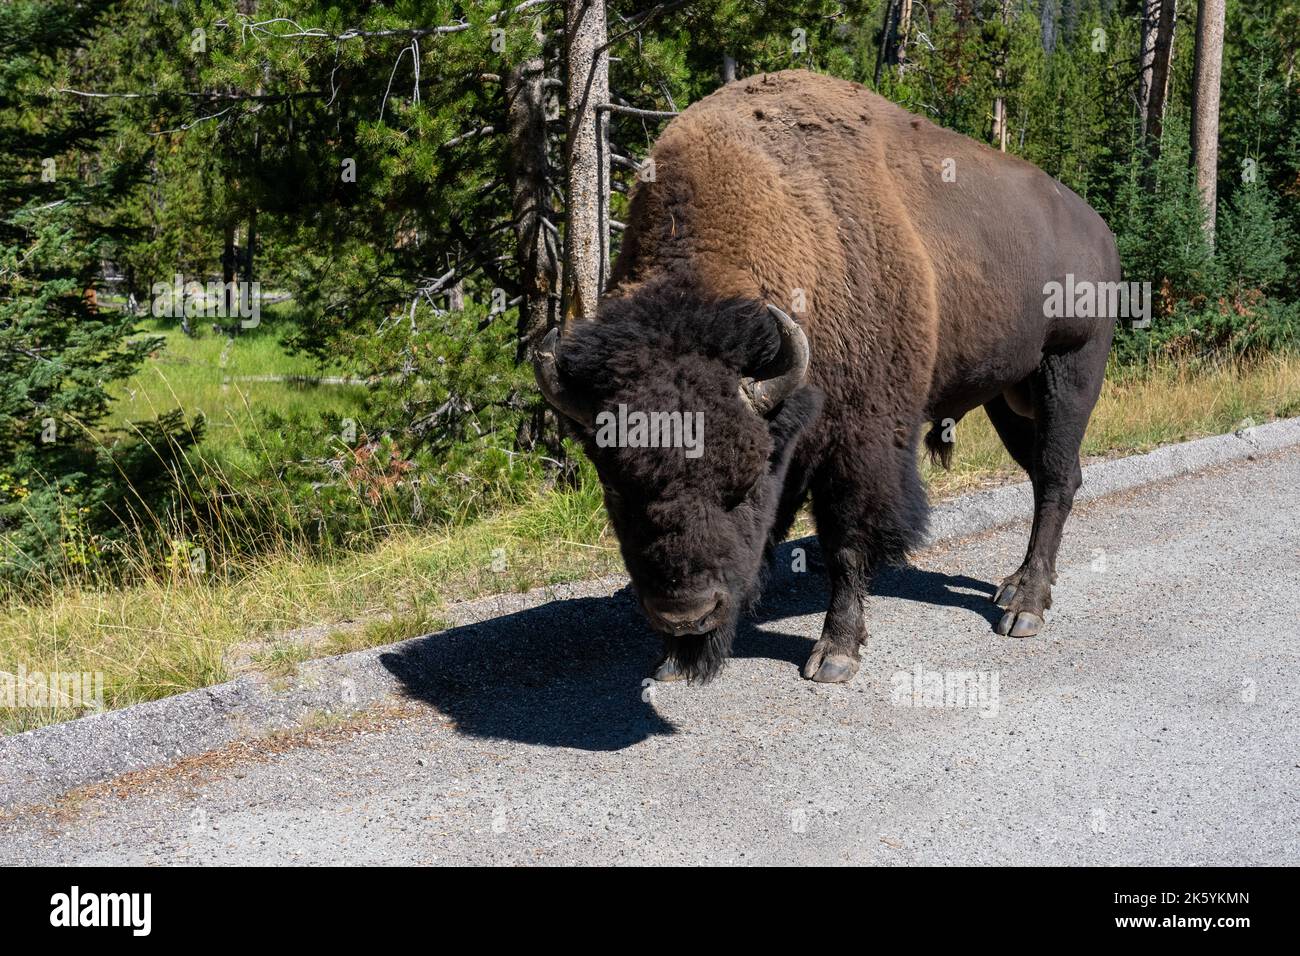 Parc national de Yellowstone, Wyoming, États-Unis. Bison marchant sur le côté de la route Banque D'Images